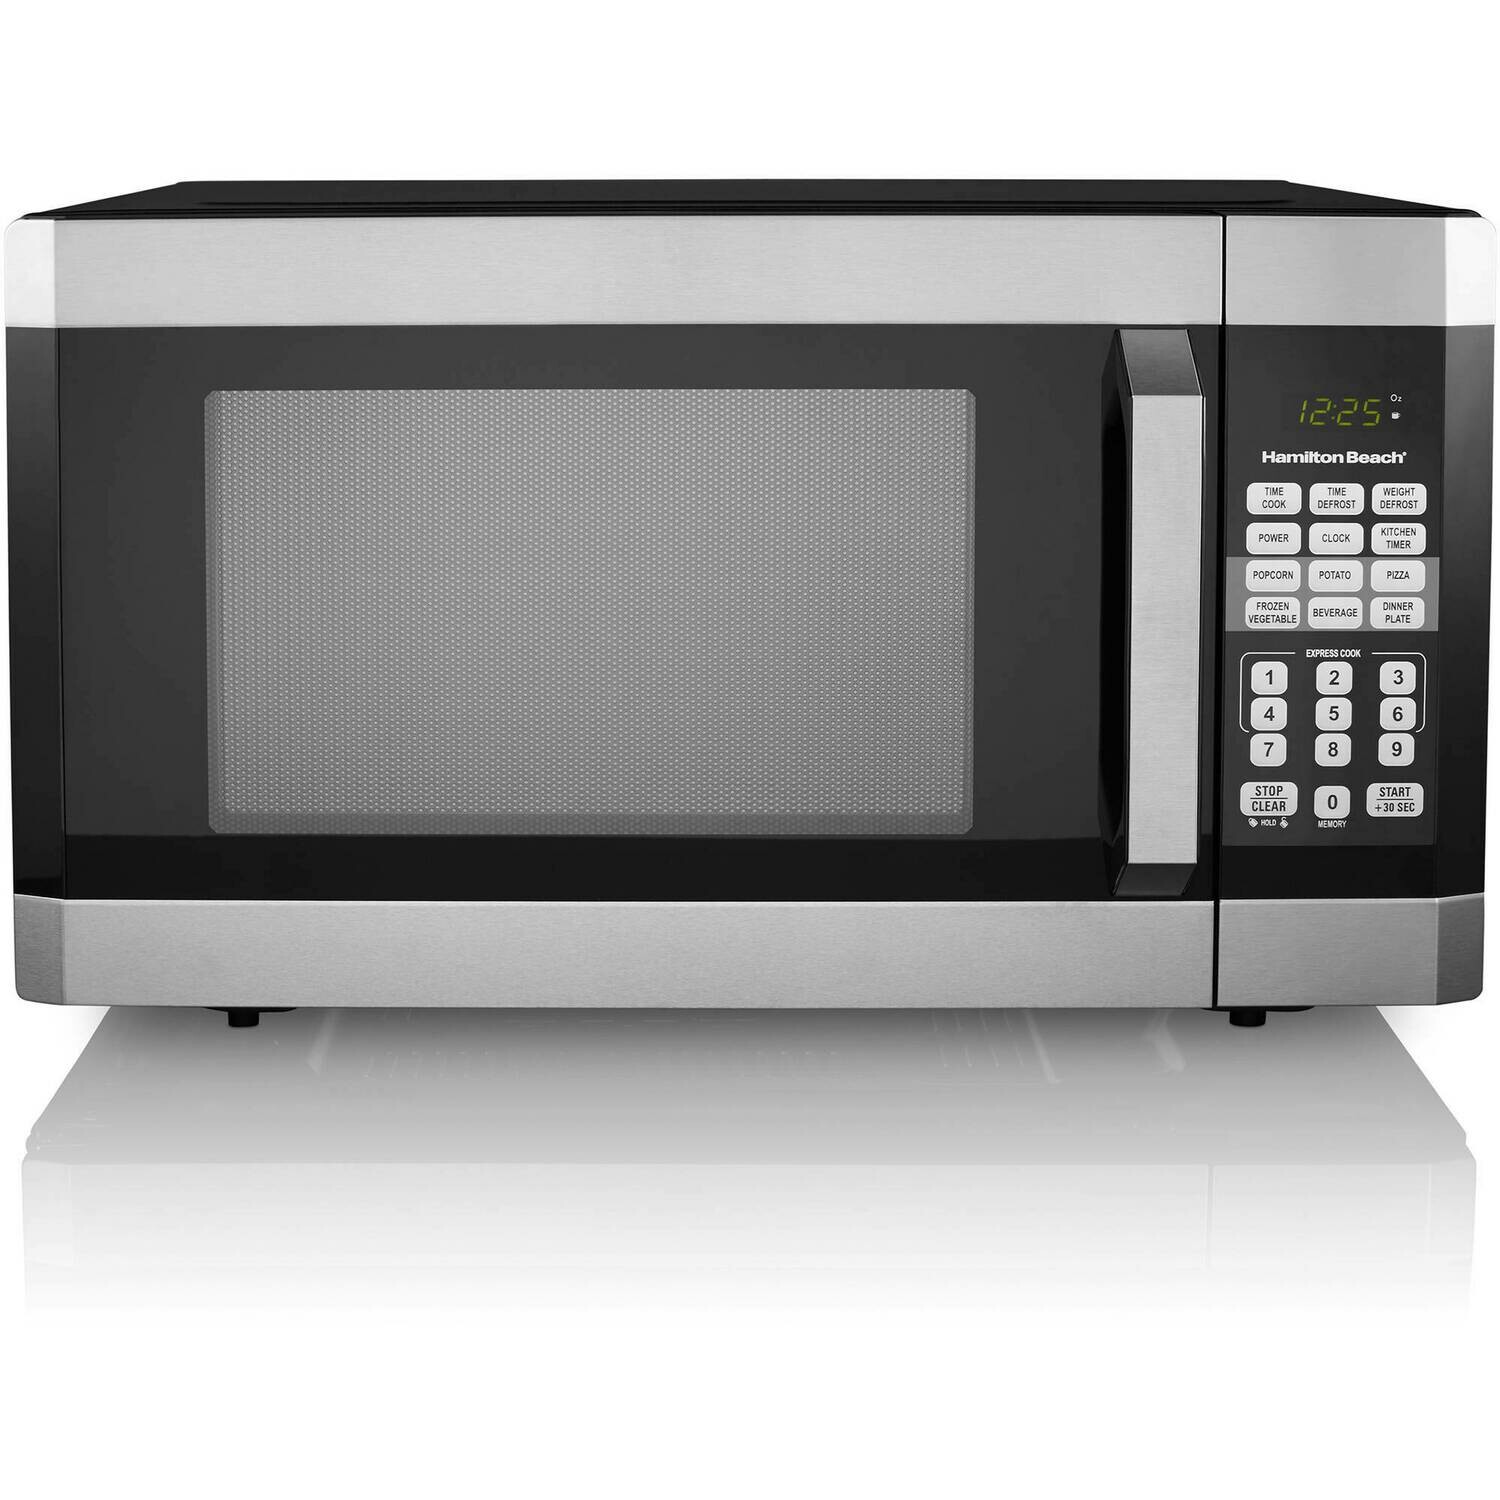 CE-204 Hamilton Beach 1.6 Cu. Ft. Digital Microwave Oven, Stainless